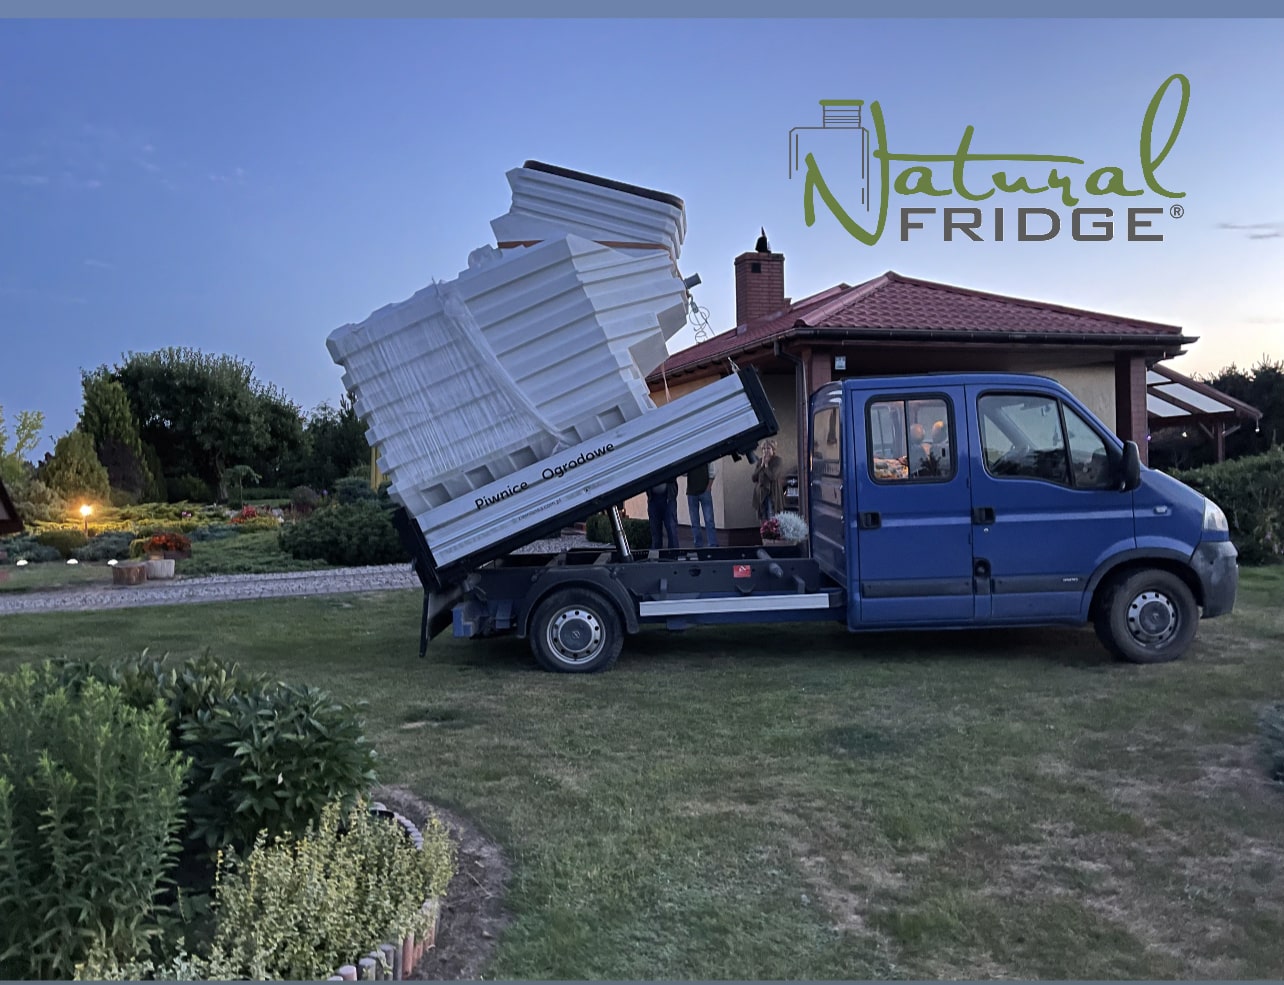 Mēs piegādājam mūsu plastmasas pagrabus Natural FRIDGE ® (dabīgs ledusskapis) no mūsu noliktavas Varšavā uz mājām. Visus ar piegādes un izkraušanas organizēšanu saistītos jautājumus kārtojam saņēmēja pusē Pagrabs 200x175 Natural Fridge 5 461 EUR